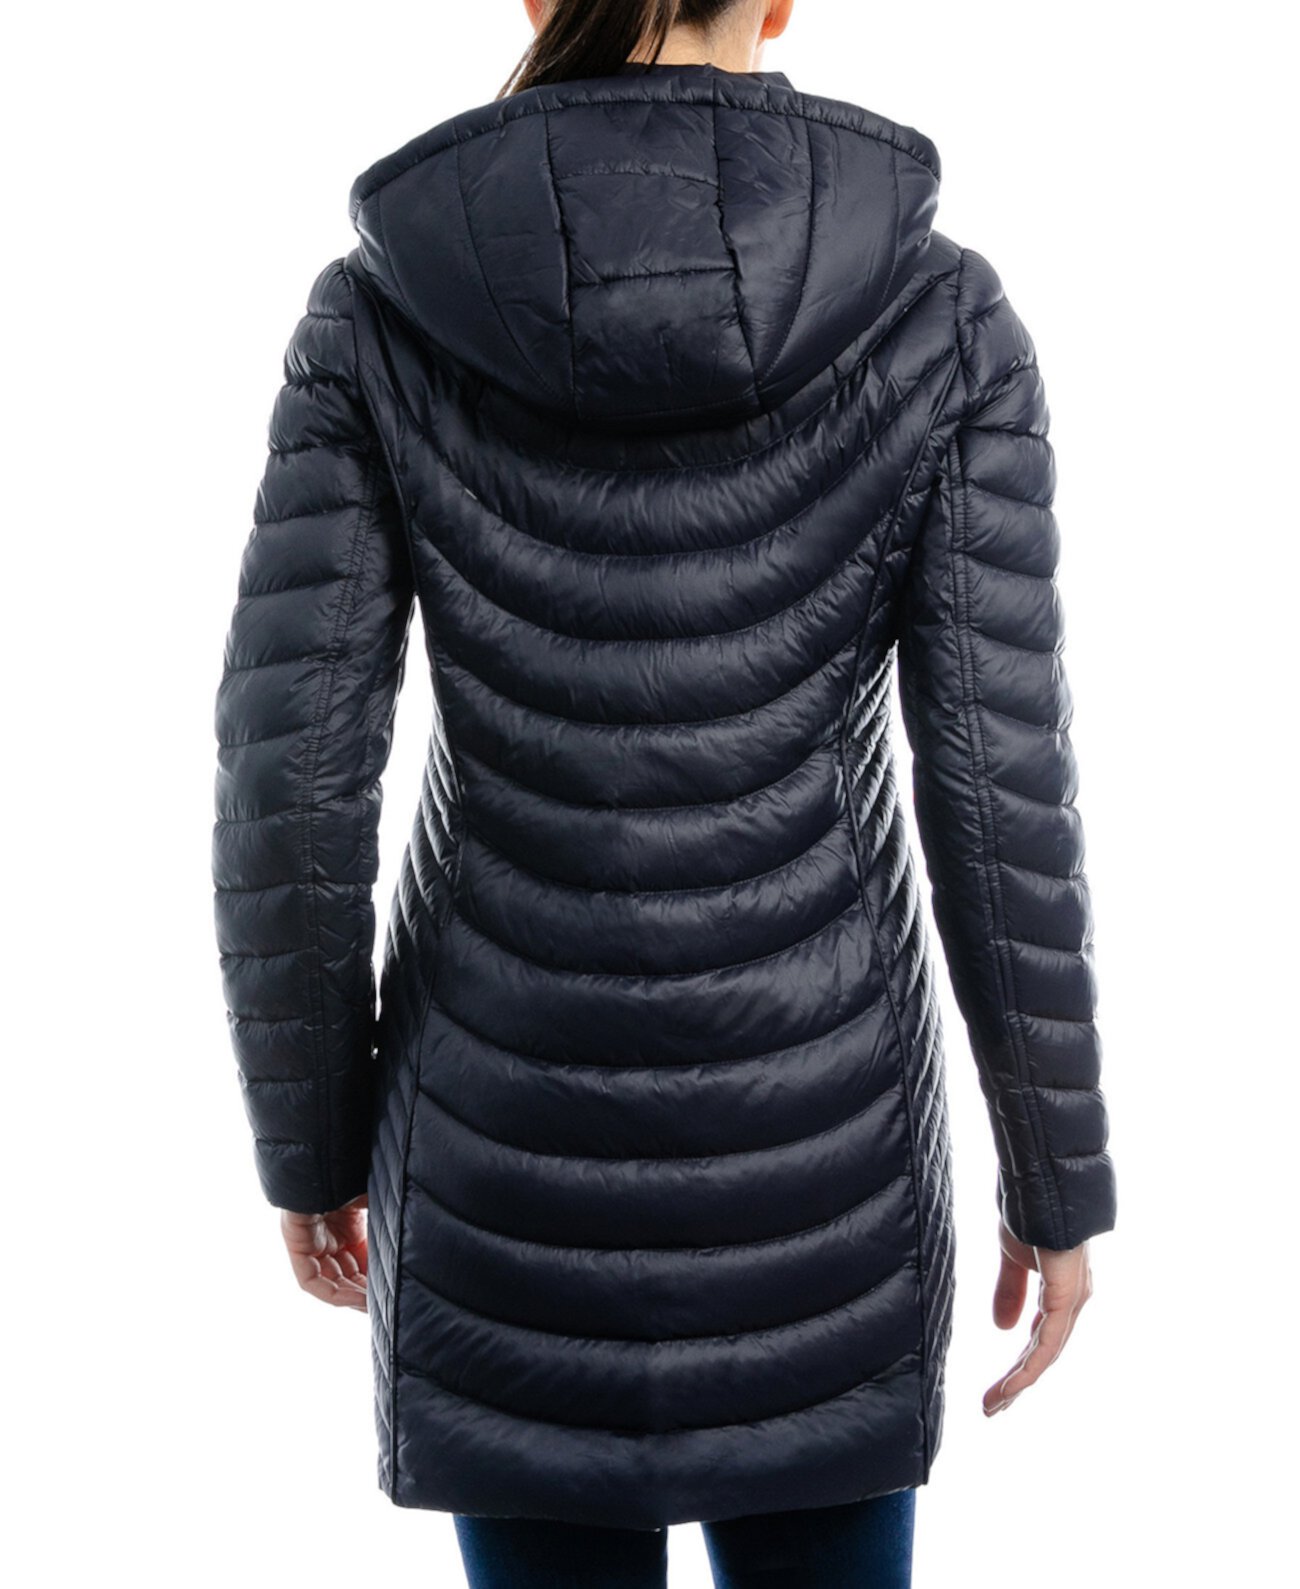 Женское компактное пуховое пальто с капюшоном Petite, созданное для Macy's Michael Kors